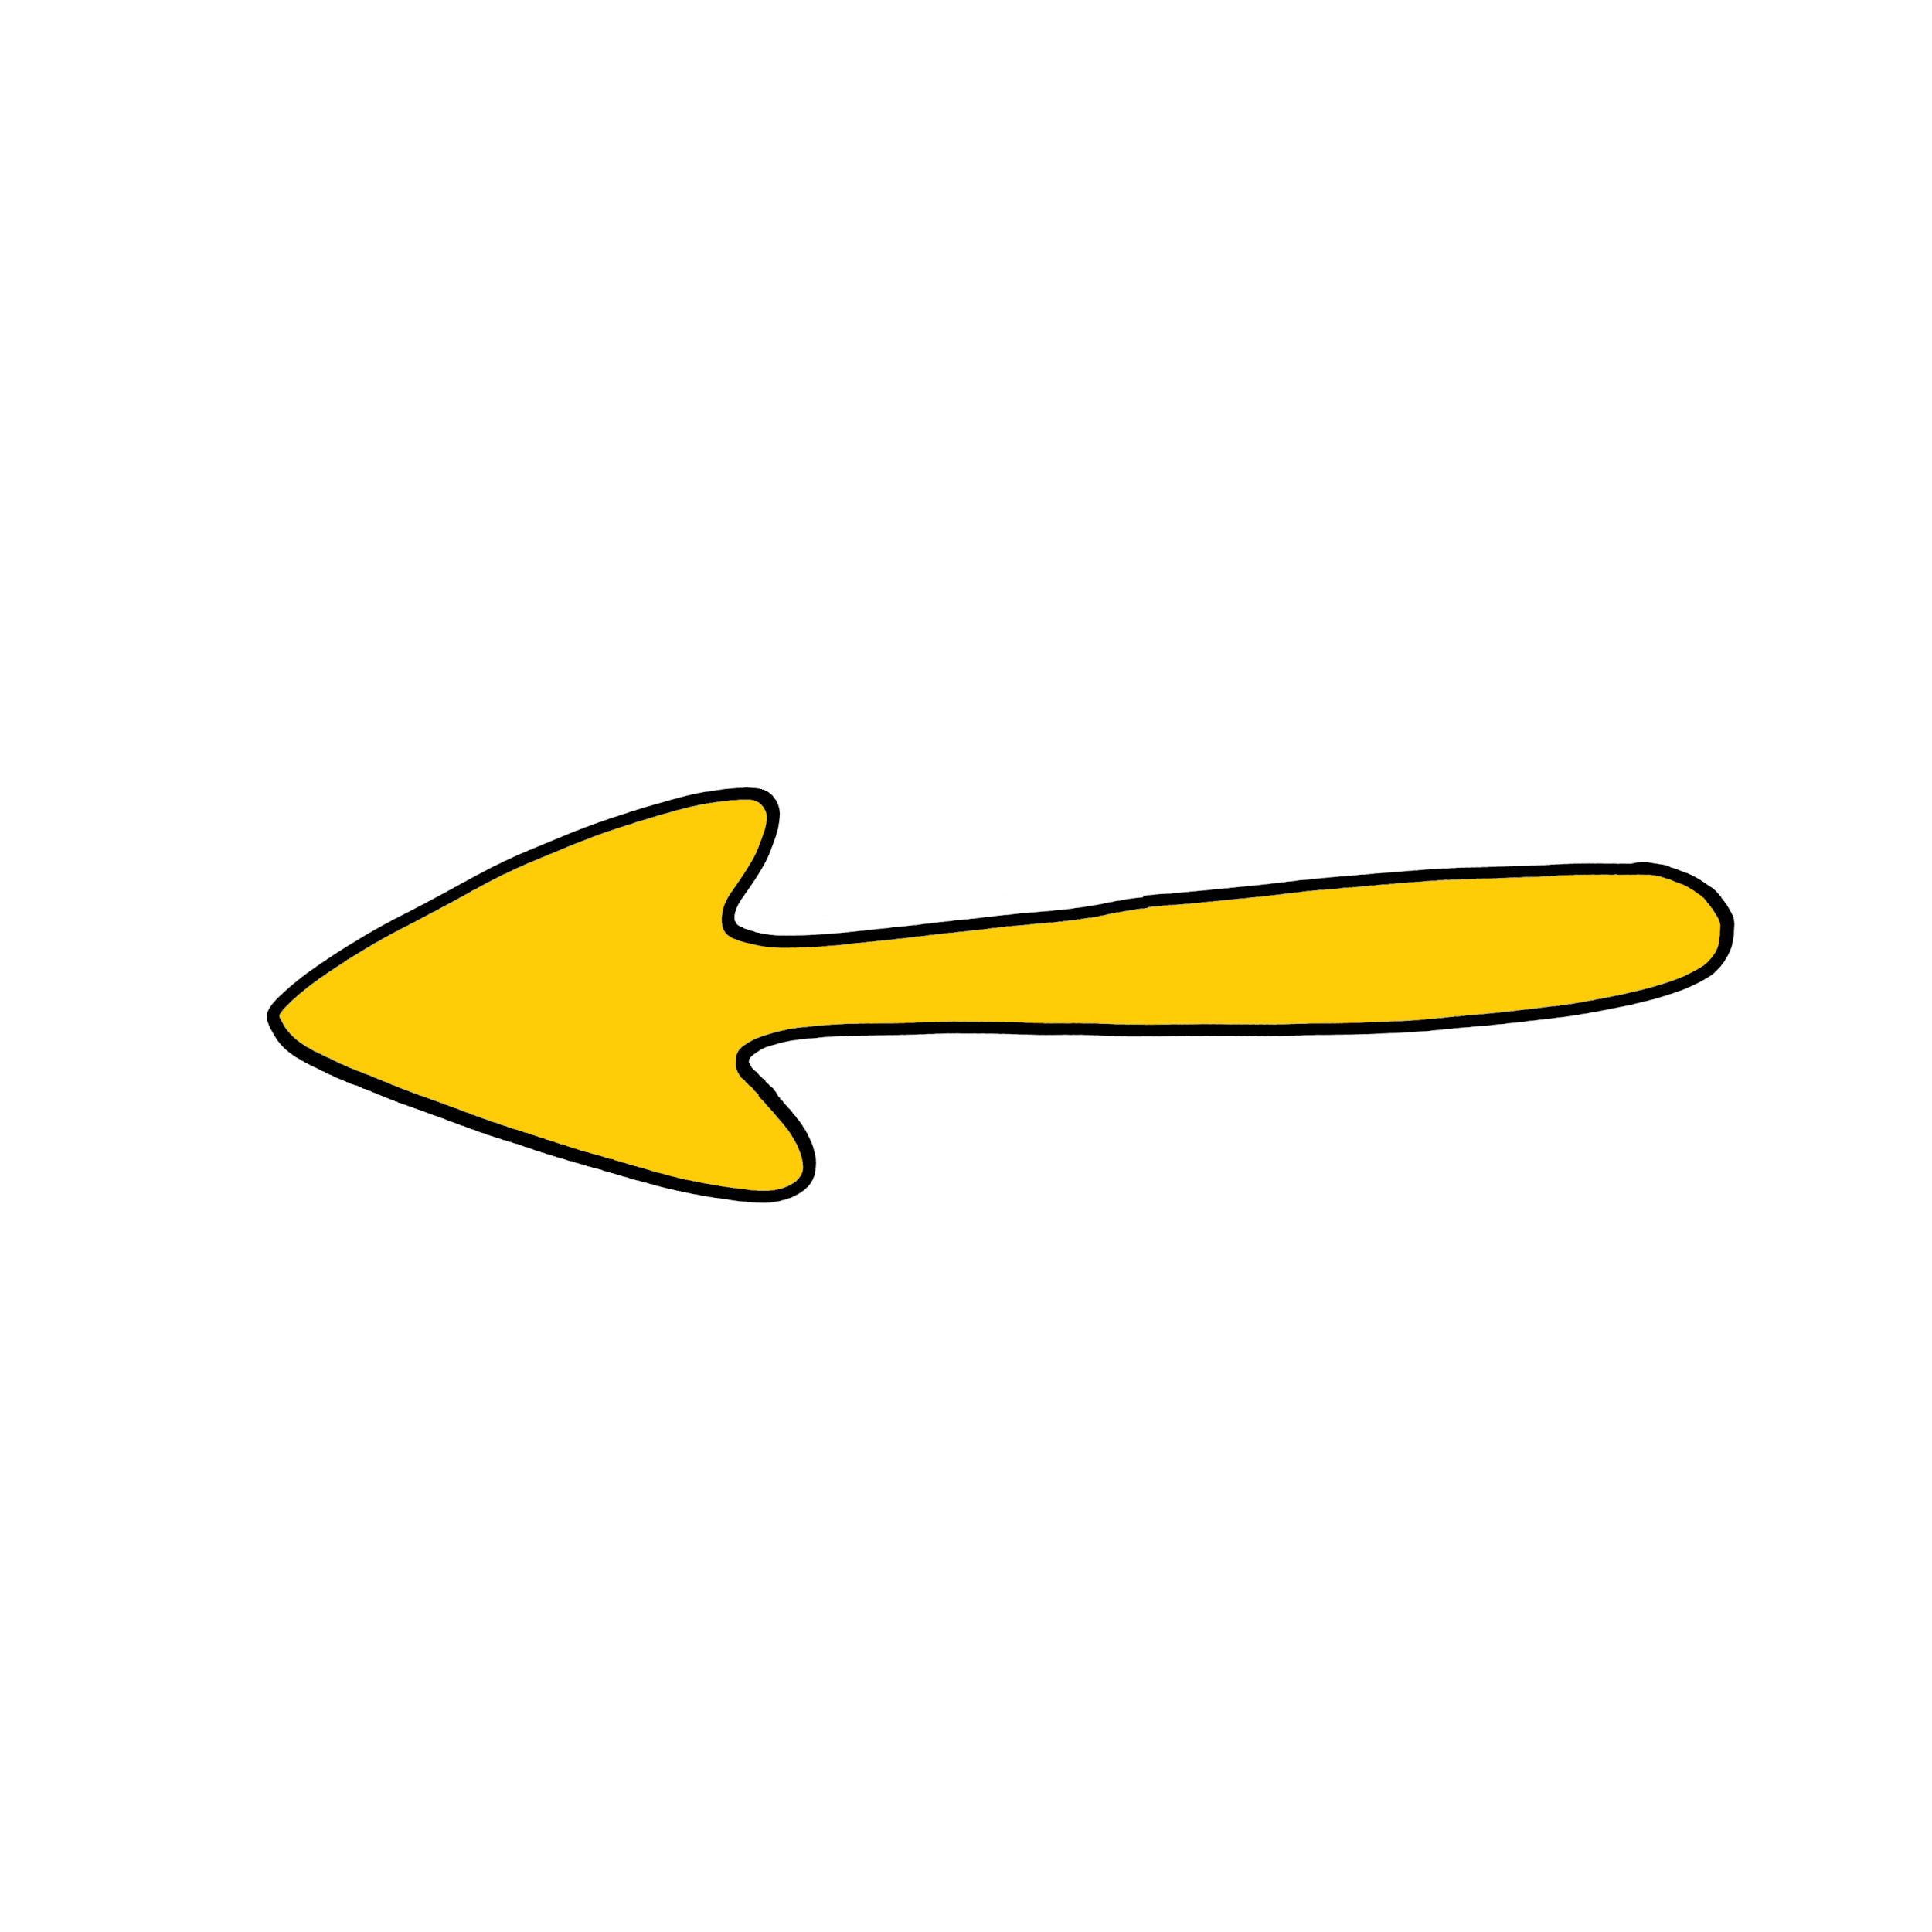 sticker_giphy_luigi_segre_instagram_arrow_small_round_arrow_horizontal_moving_yellow.gif